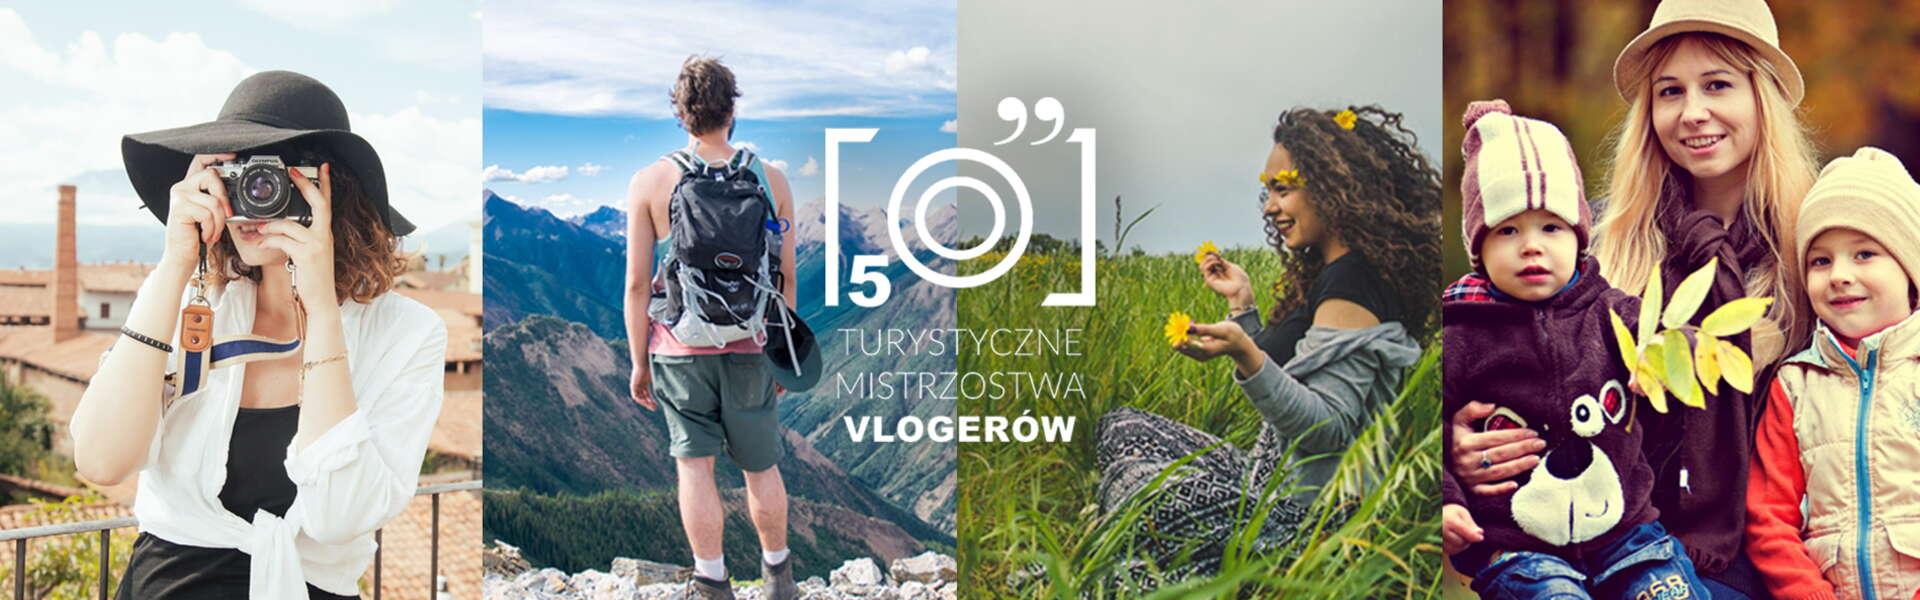 Obrázok: Zagłosuj na Małopolskę - V Turystyczne Mistrzostwa Vlogerów!